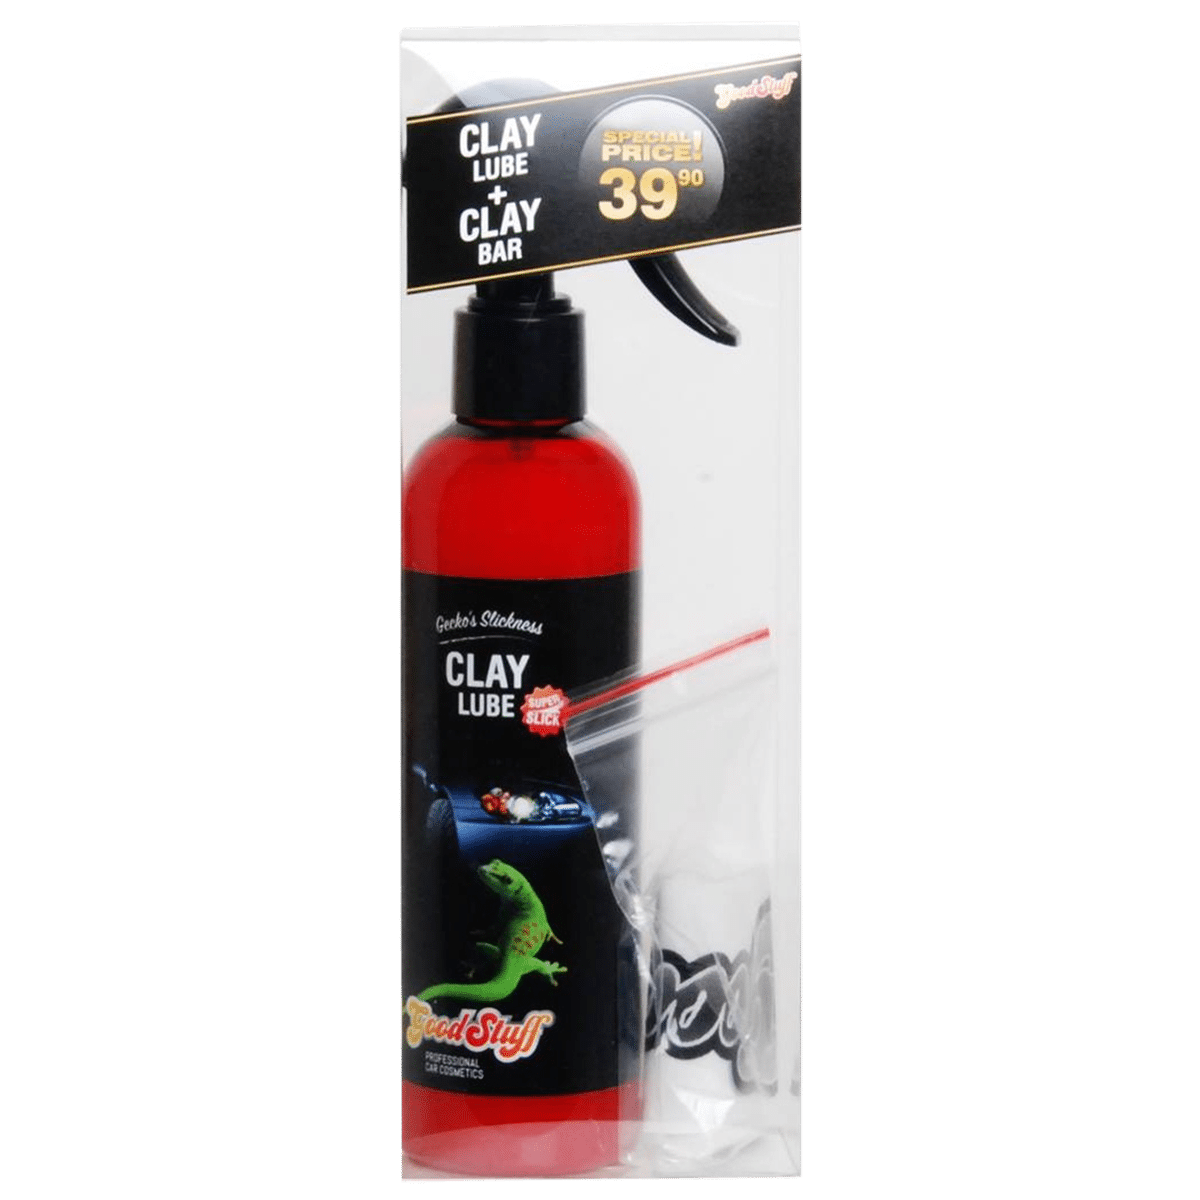 GOOD STUFF Gecko’s Slickness Clay Lube 250ml + Glinka 50gr